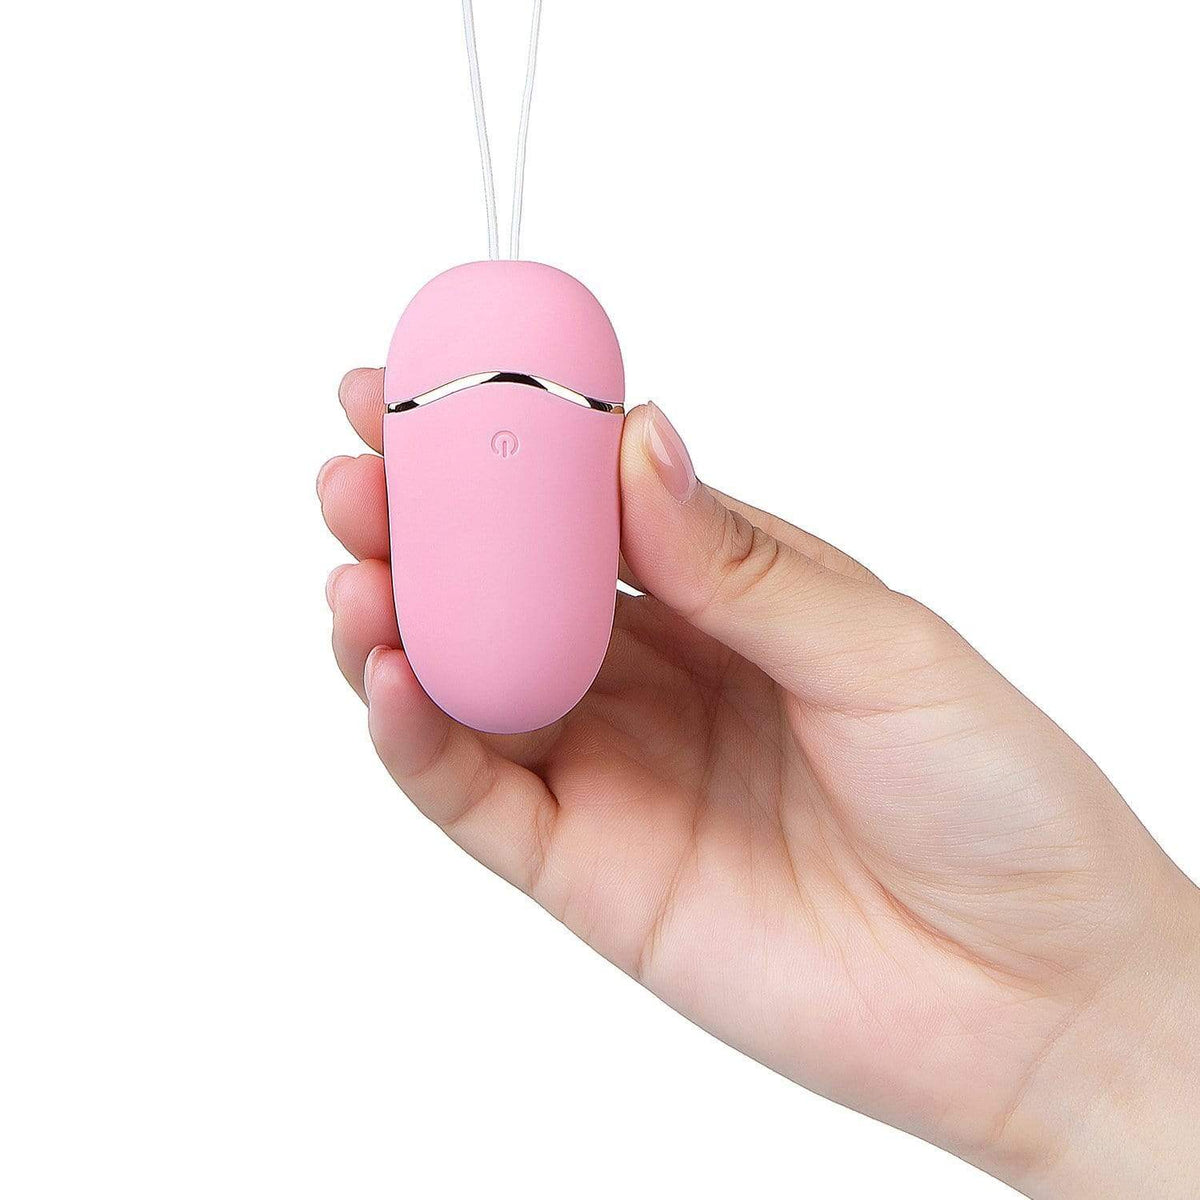 Erocome - UrsaMinor Remote Control Egg Vibrator (Pink)    Wireless Remote Control Egg (Vibration) Rechargeable